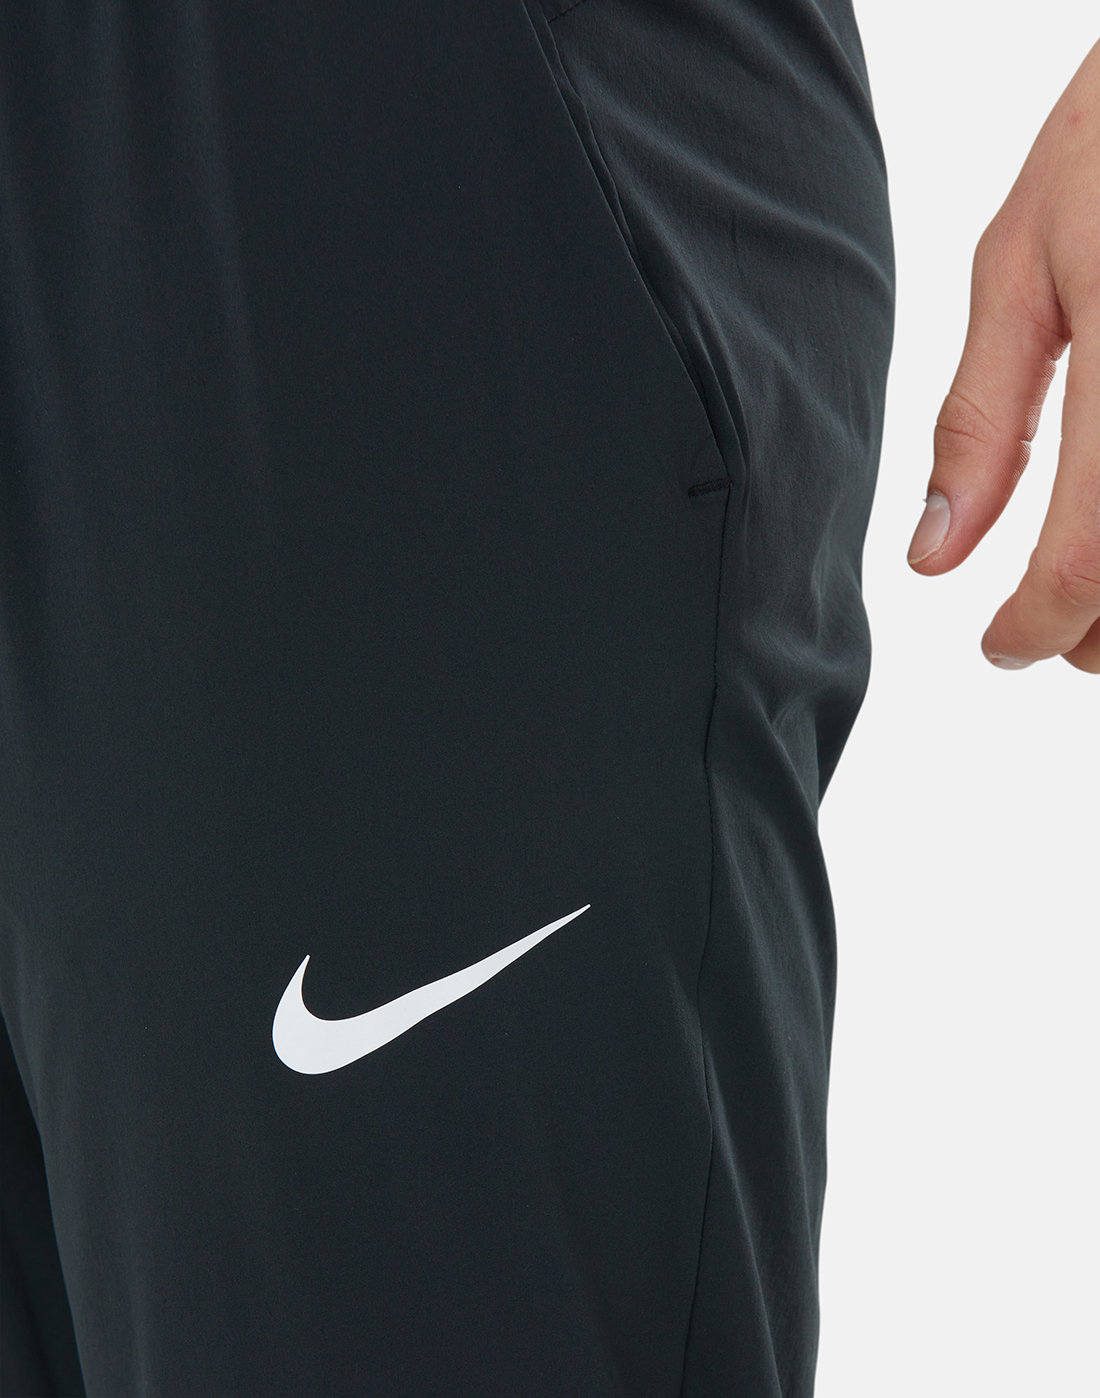 Nike Mens Pro Flex Vent Max Pants - Black | Life Style Sports EU